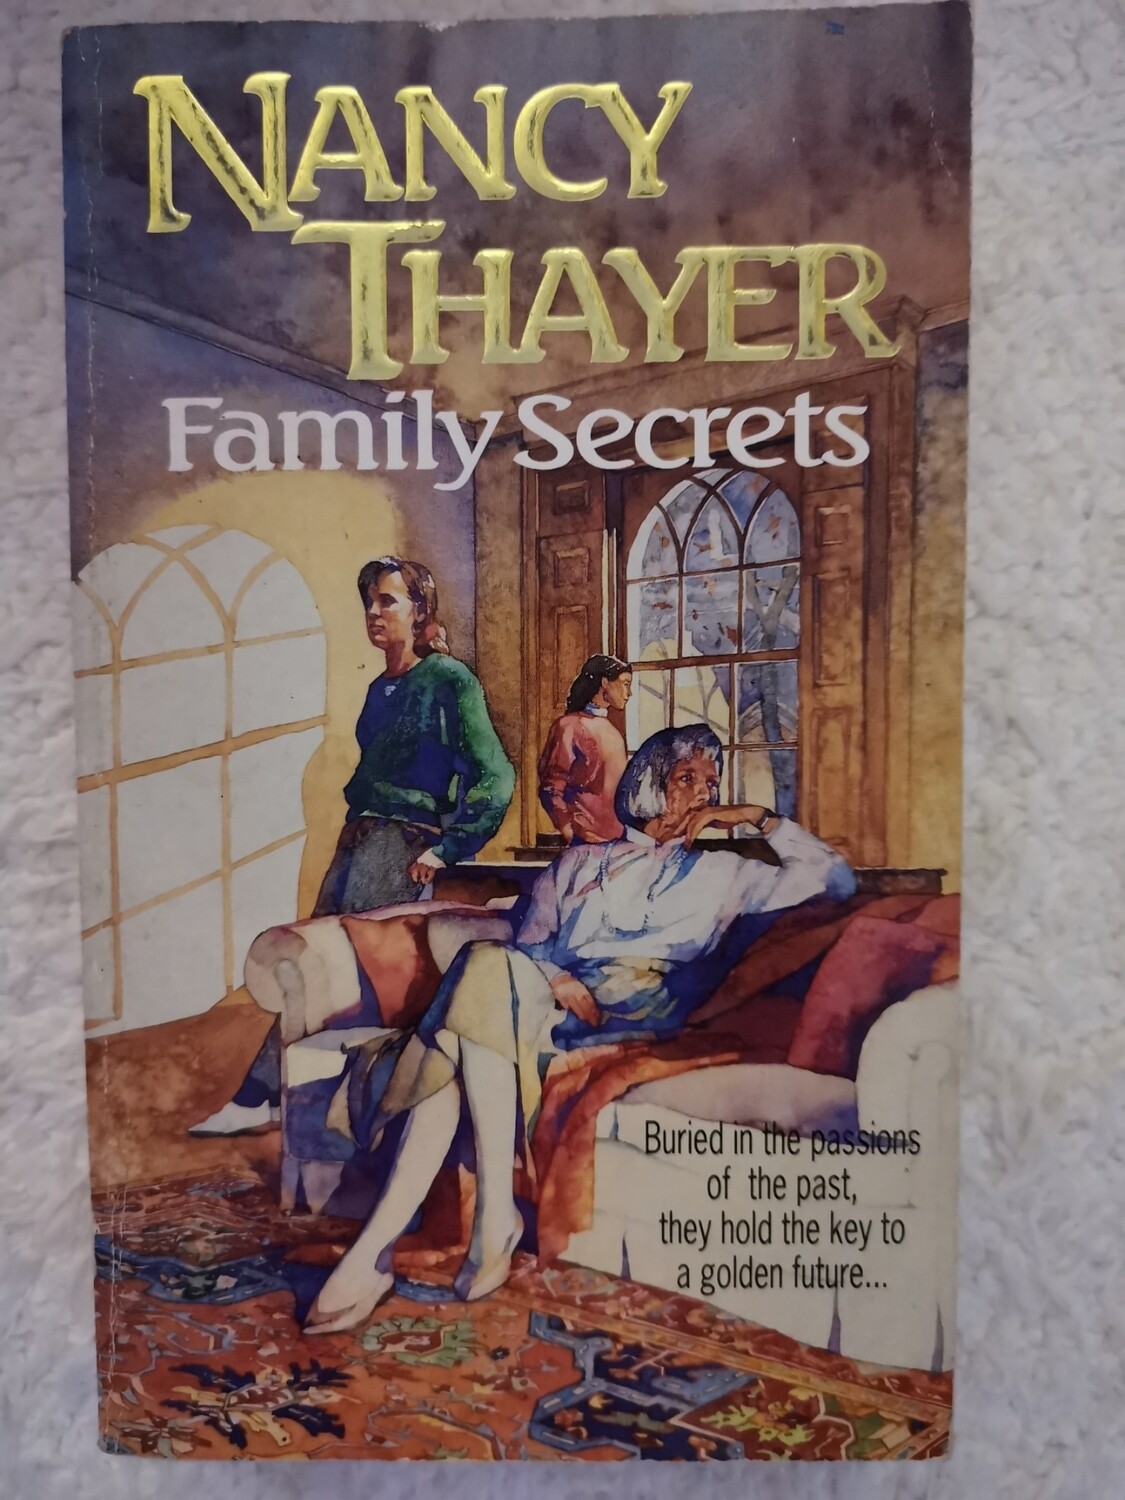 Family secrets, Nancy Thayer